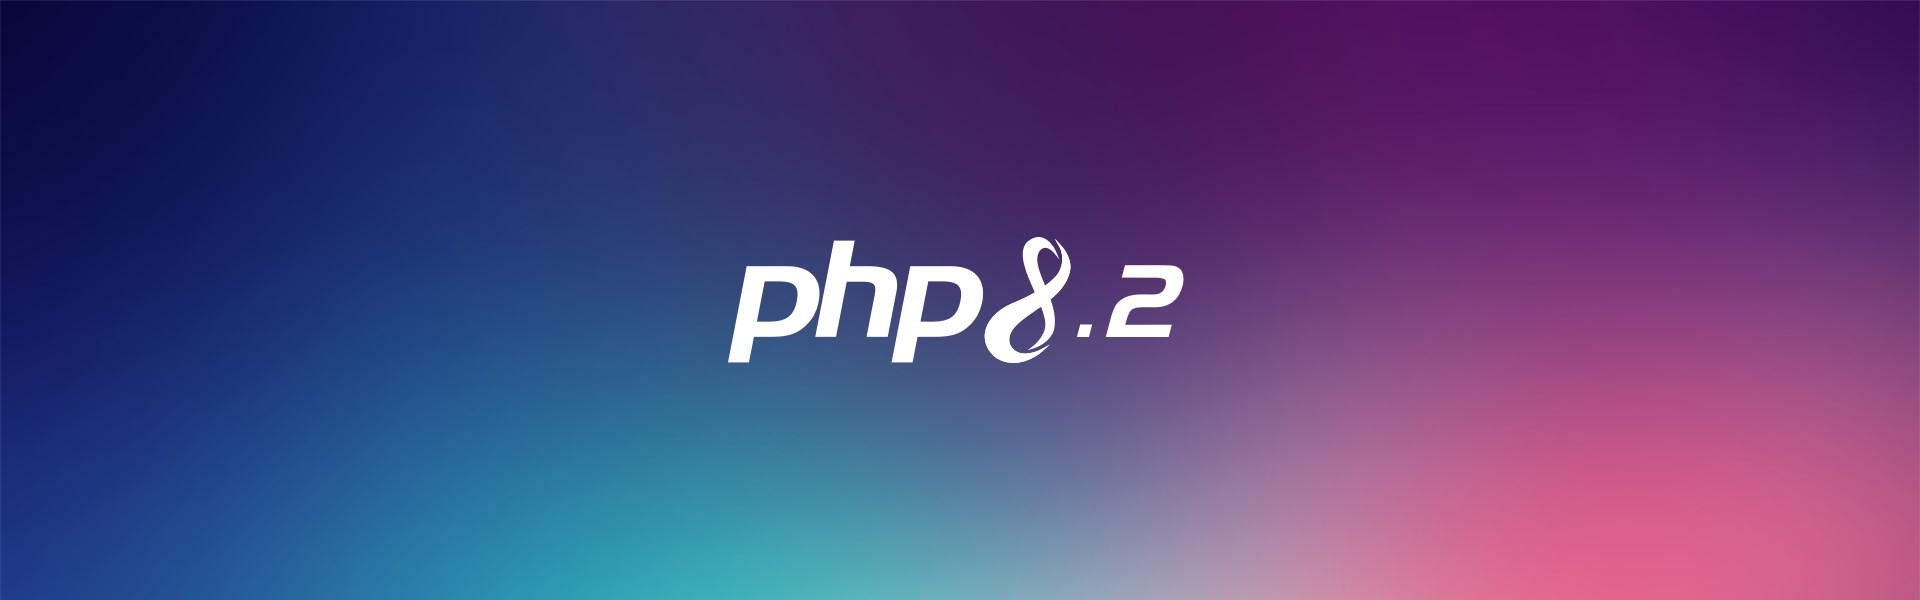 PHP 8.2 logo